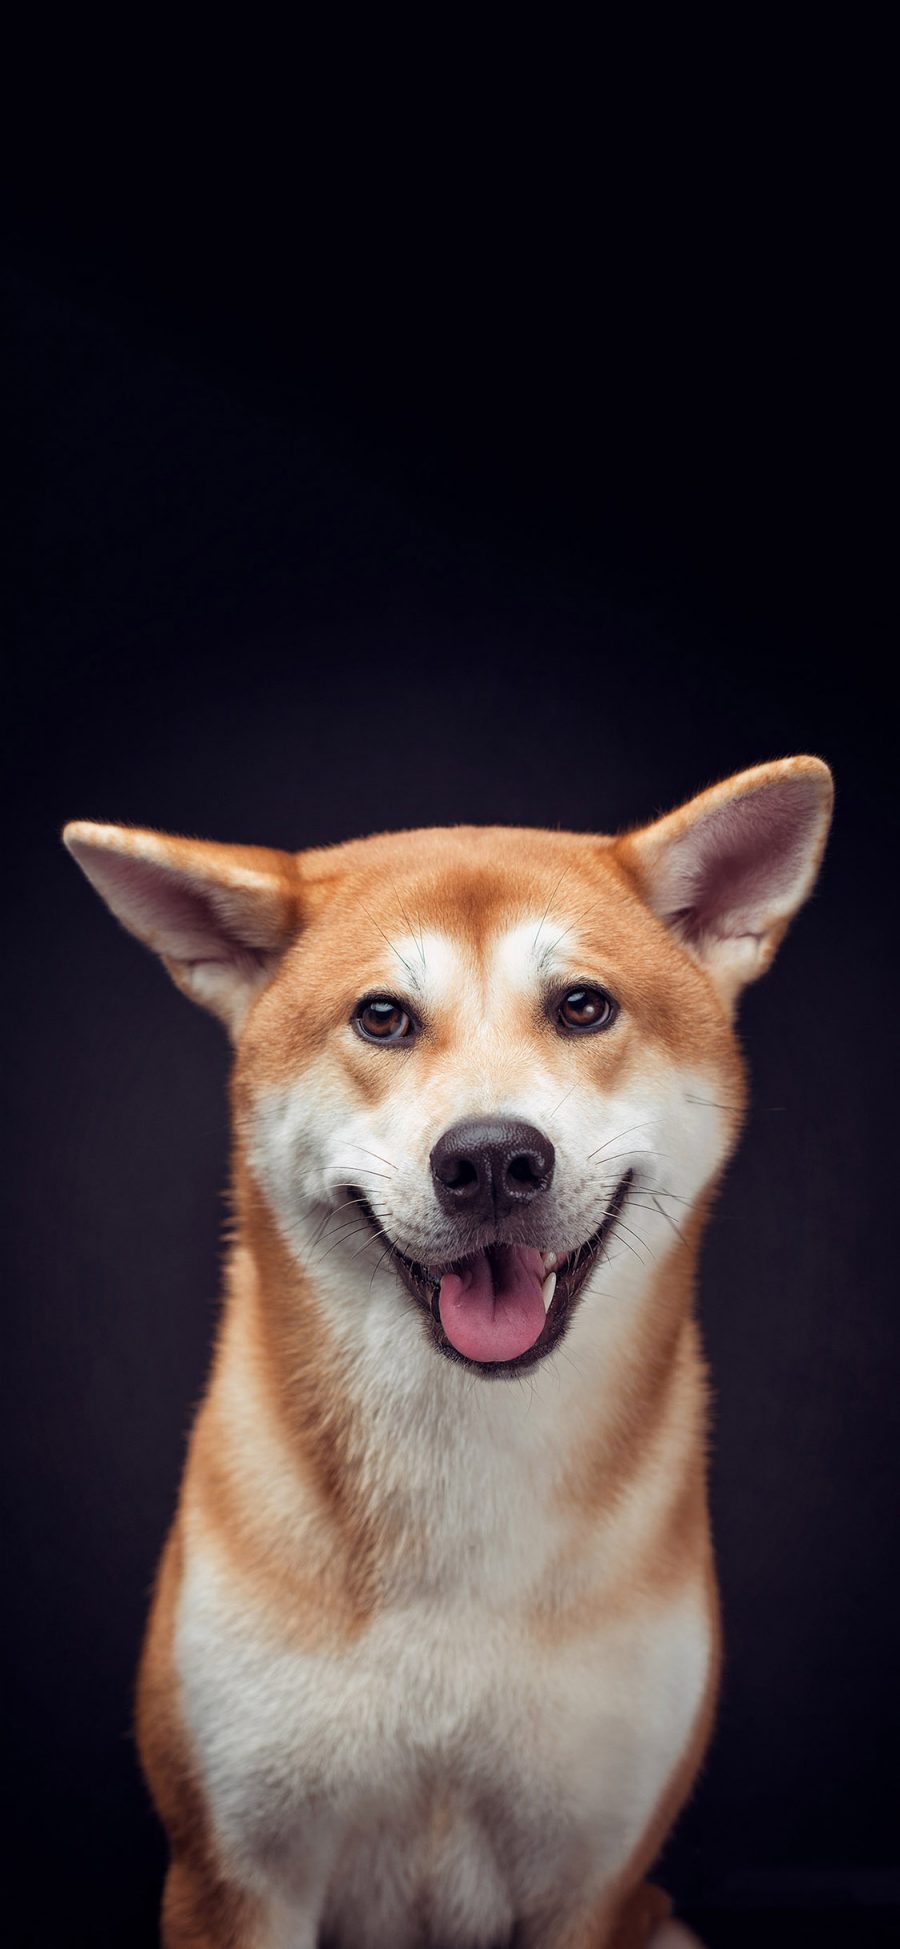 [2436×1125]日本 柴犬 宠物狗 可爱 苹果手机壁纸图片